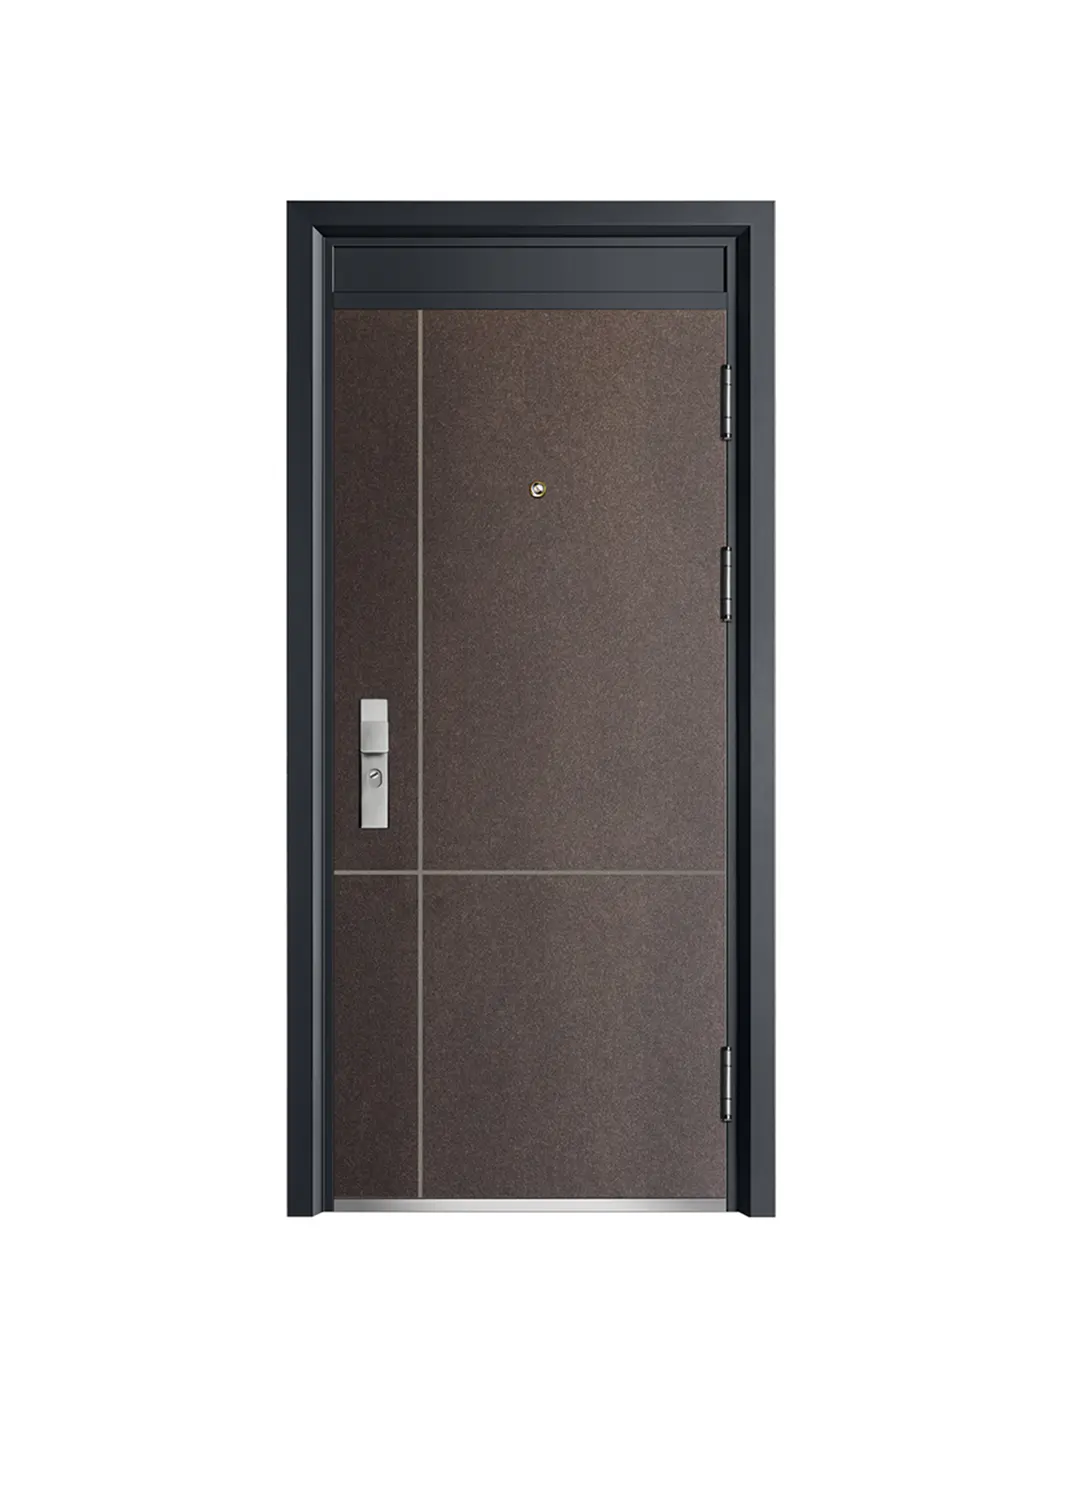 Fabrik billige Sicherheit Edelstahl Single Gate Tür Stahl Garagentor Stahltür für zu Hause Haupteingang